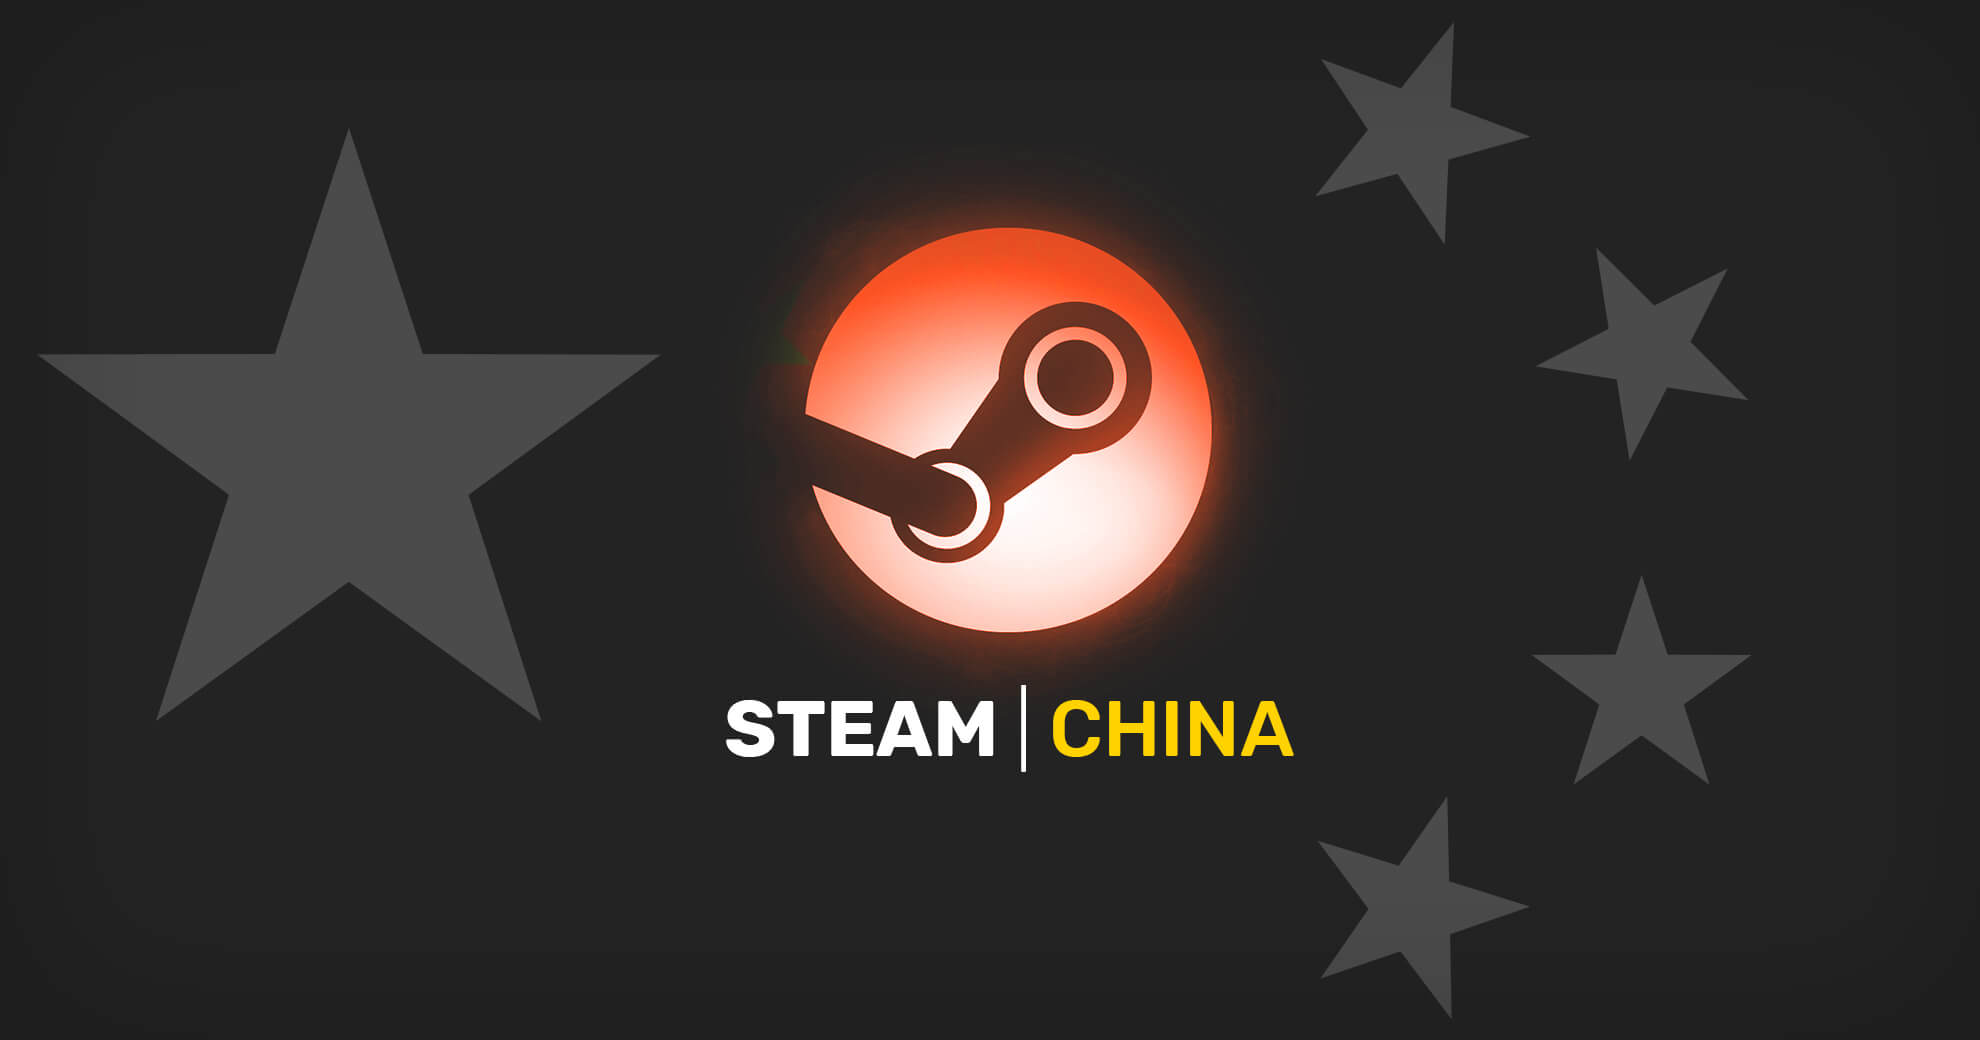 Состоялся запуск Steam в Китае, доступно 40 игр. PlayStation 5 тоже хочет в Поднебесную